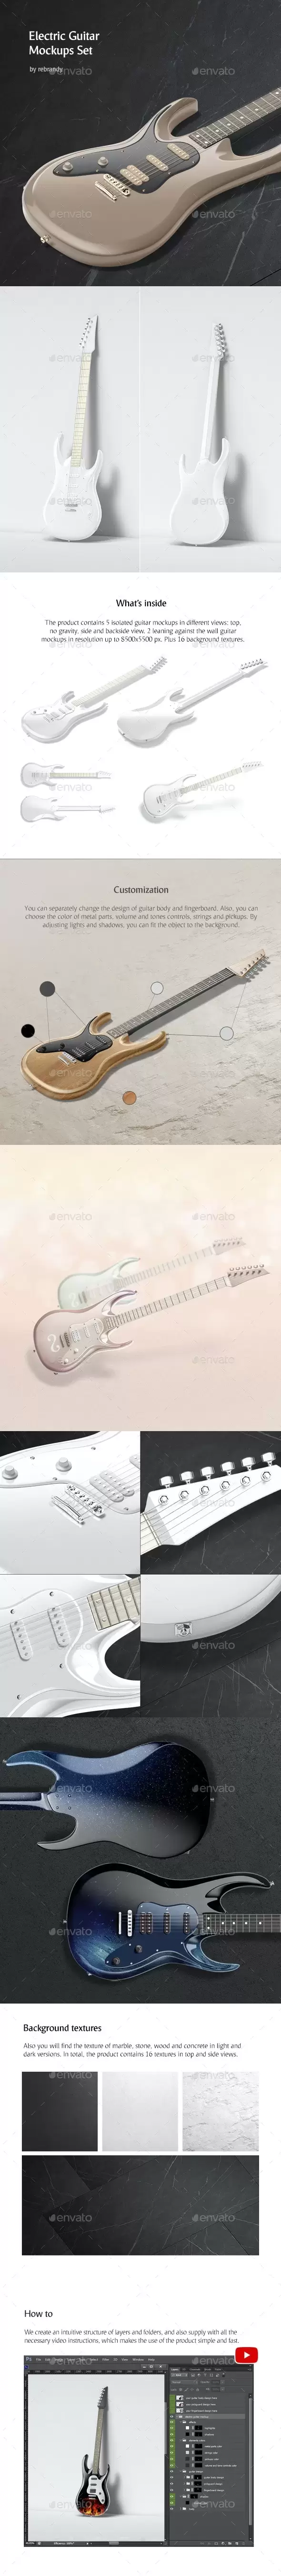 电吉他外观设计样机集[1.03GB,PSD]免费下载插图